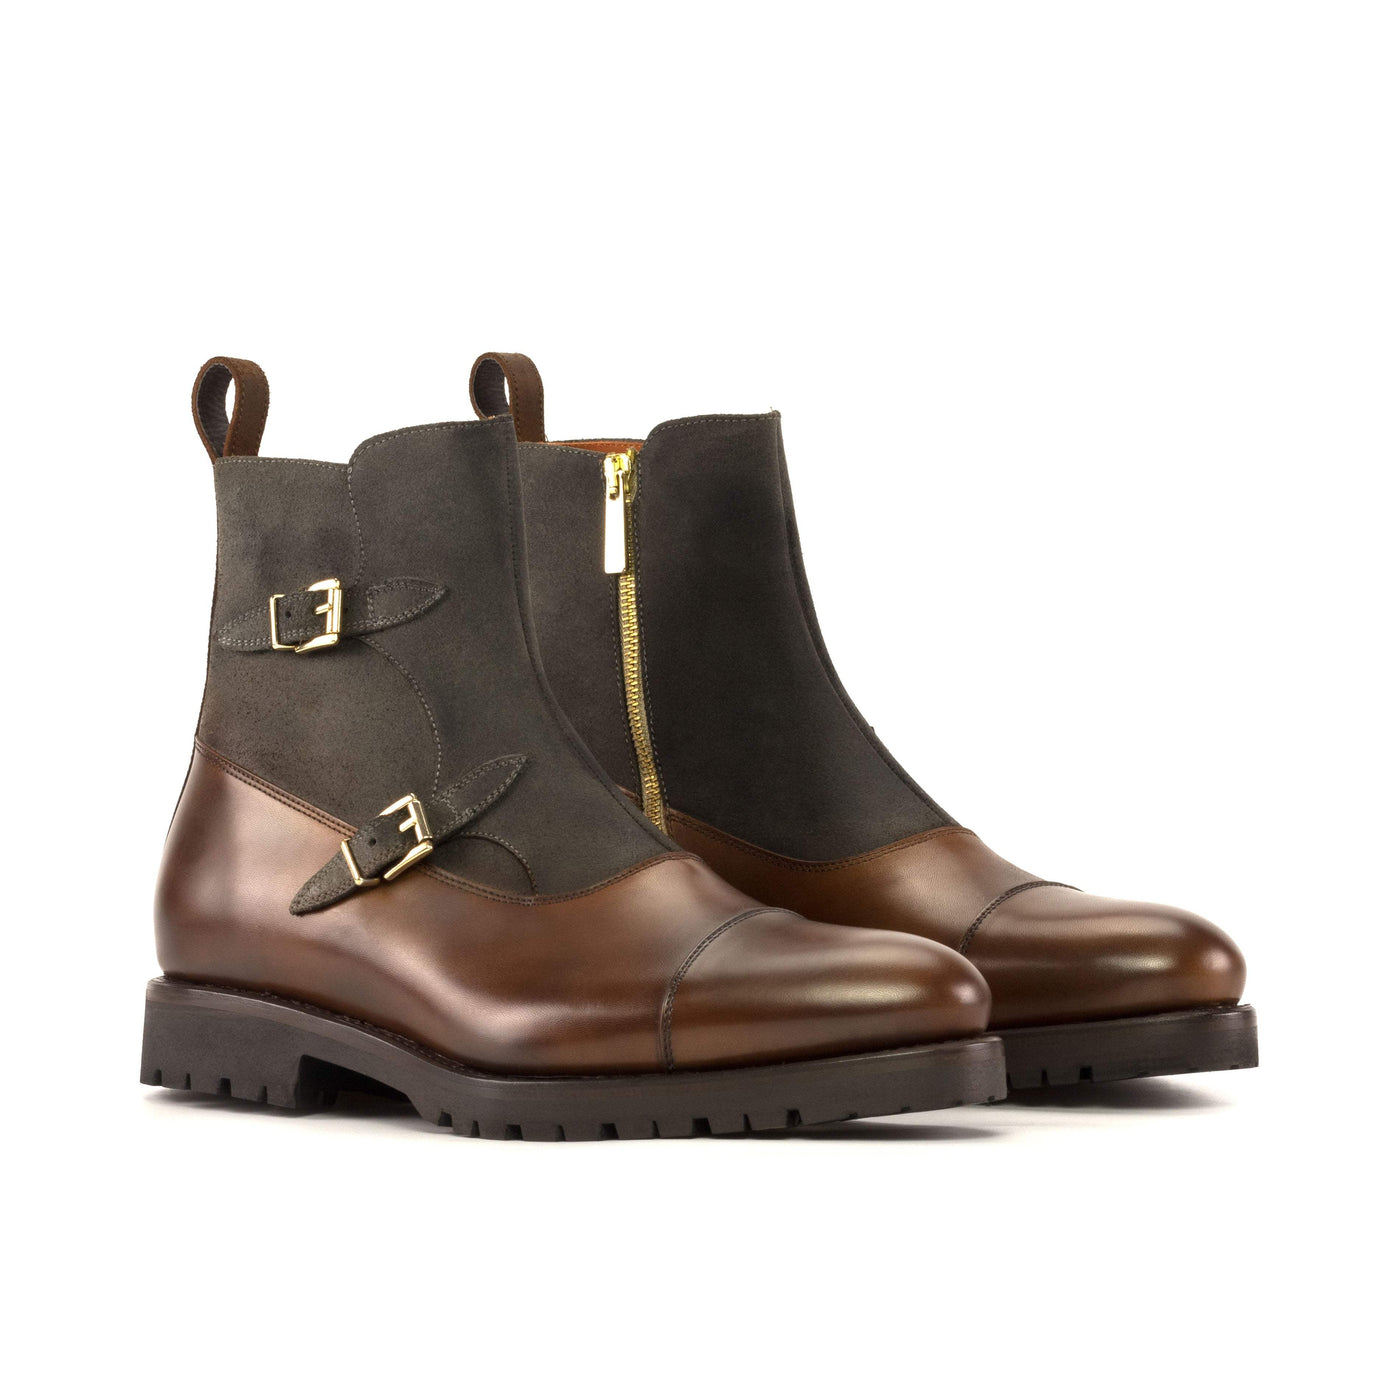 Men's Octavian Buckle Boots Leather Goodyear Welt Brown 5431 3- MERRIMIUM